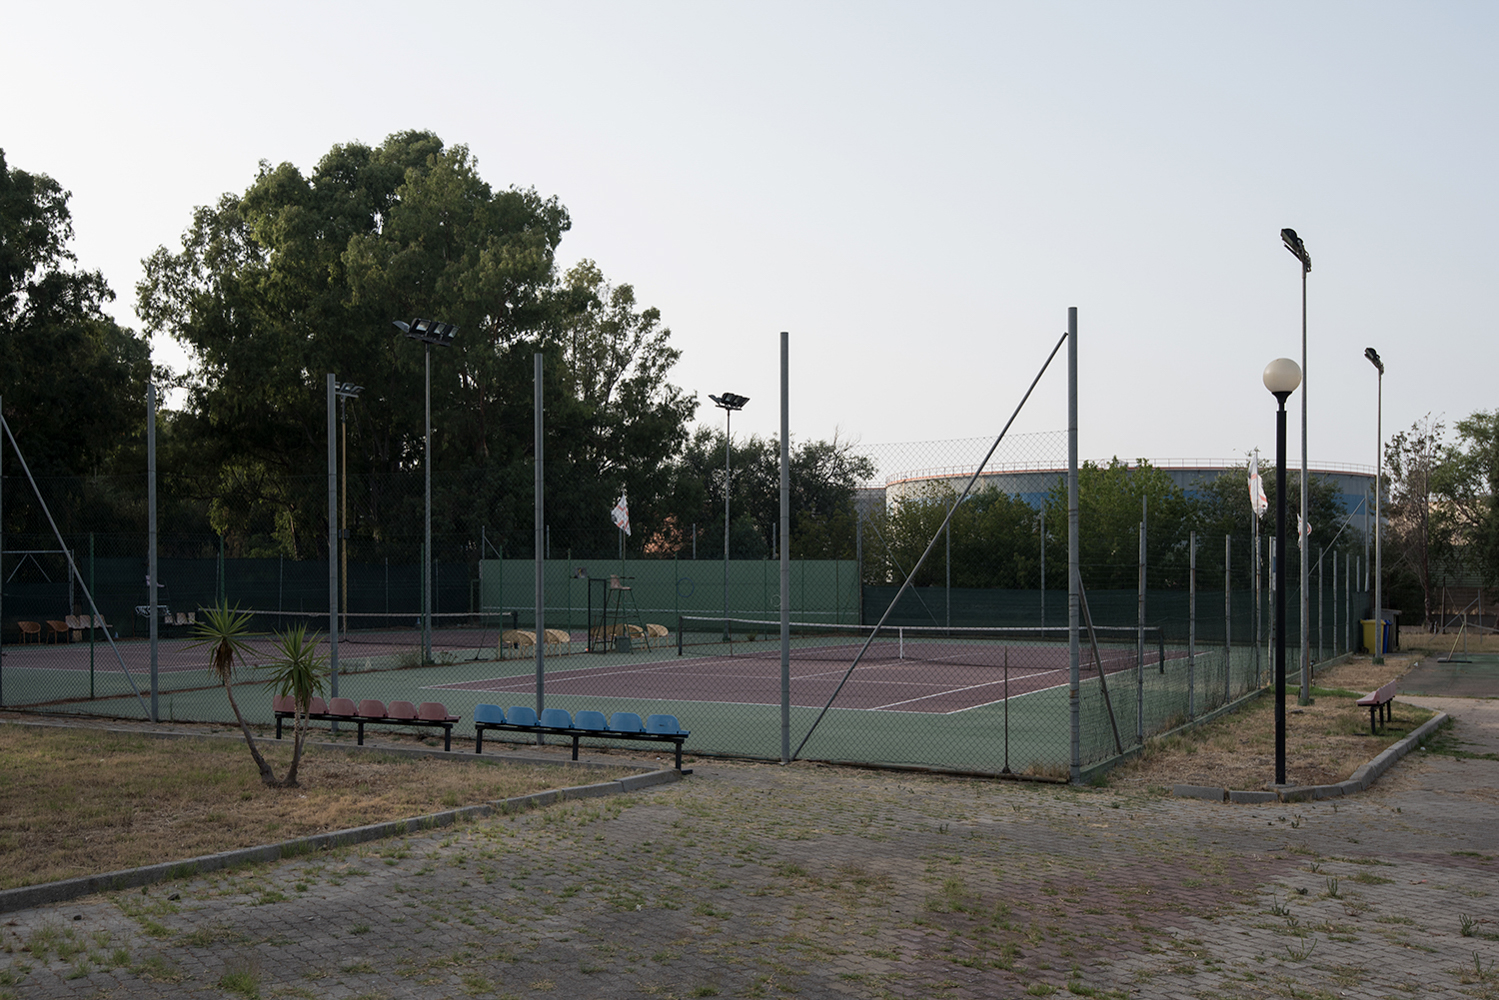  Palestre e campi sportivi sorgono a ridosso di imponenti cisterne disposte lungo i confini della raffineria. Sarroch (Cagliari), 2017 